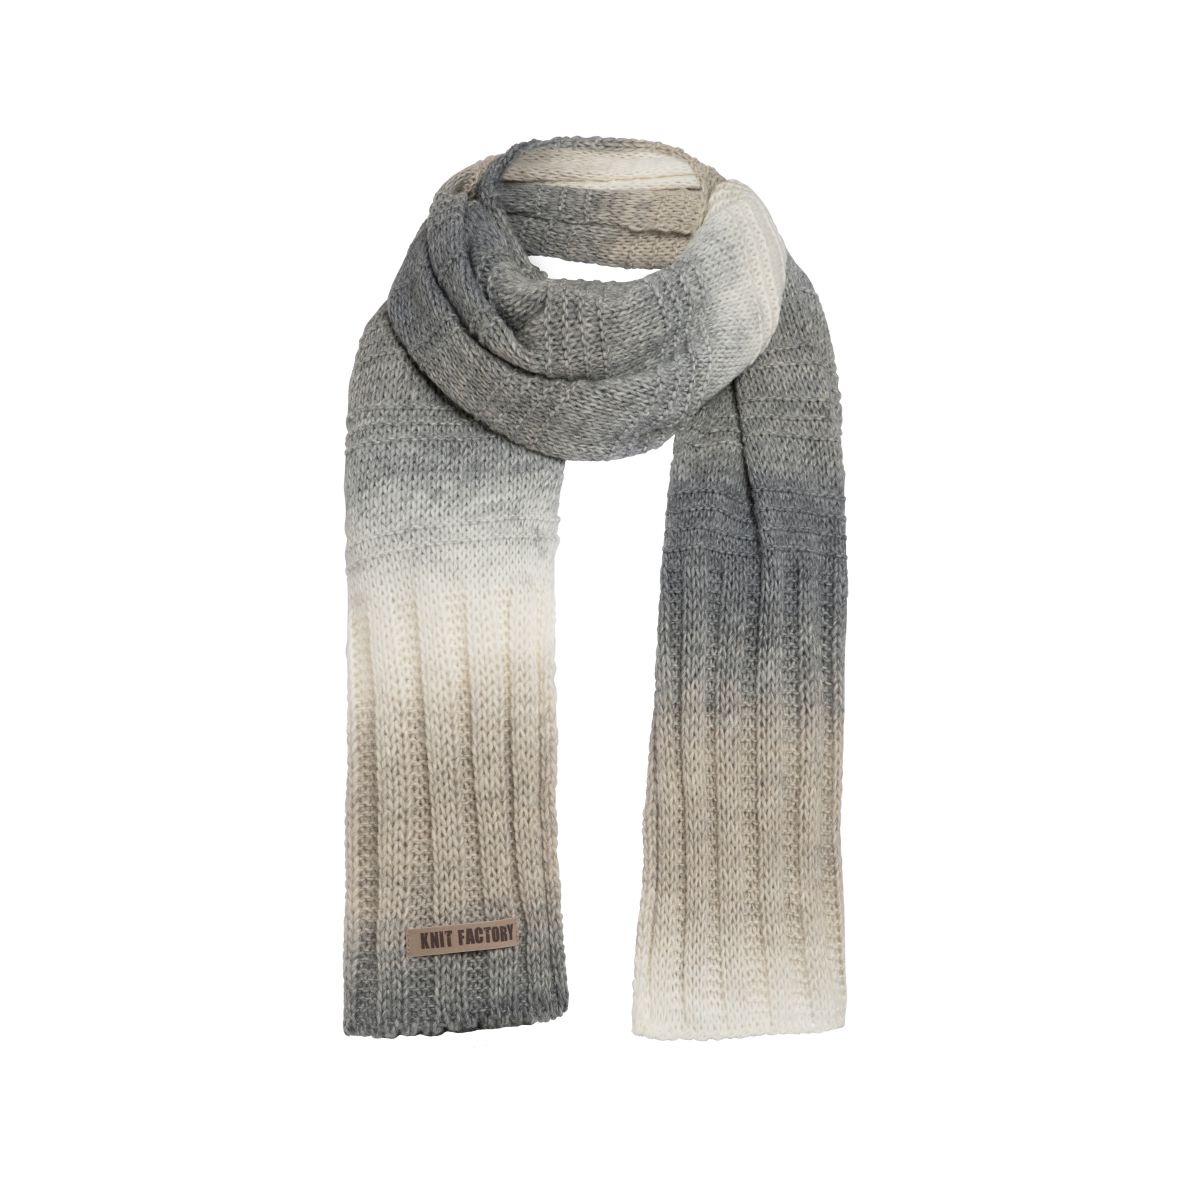 mace scarf light greybeige